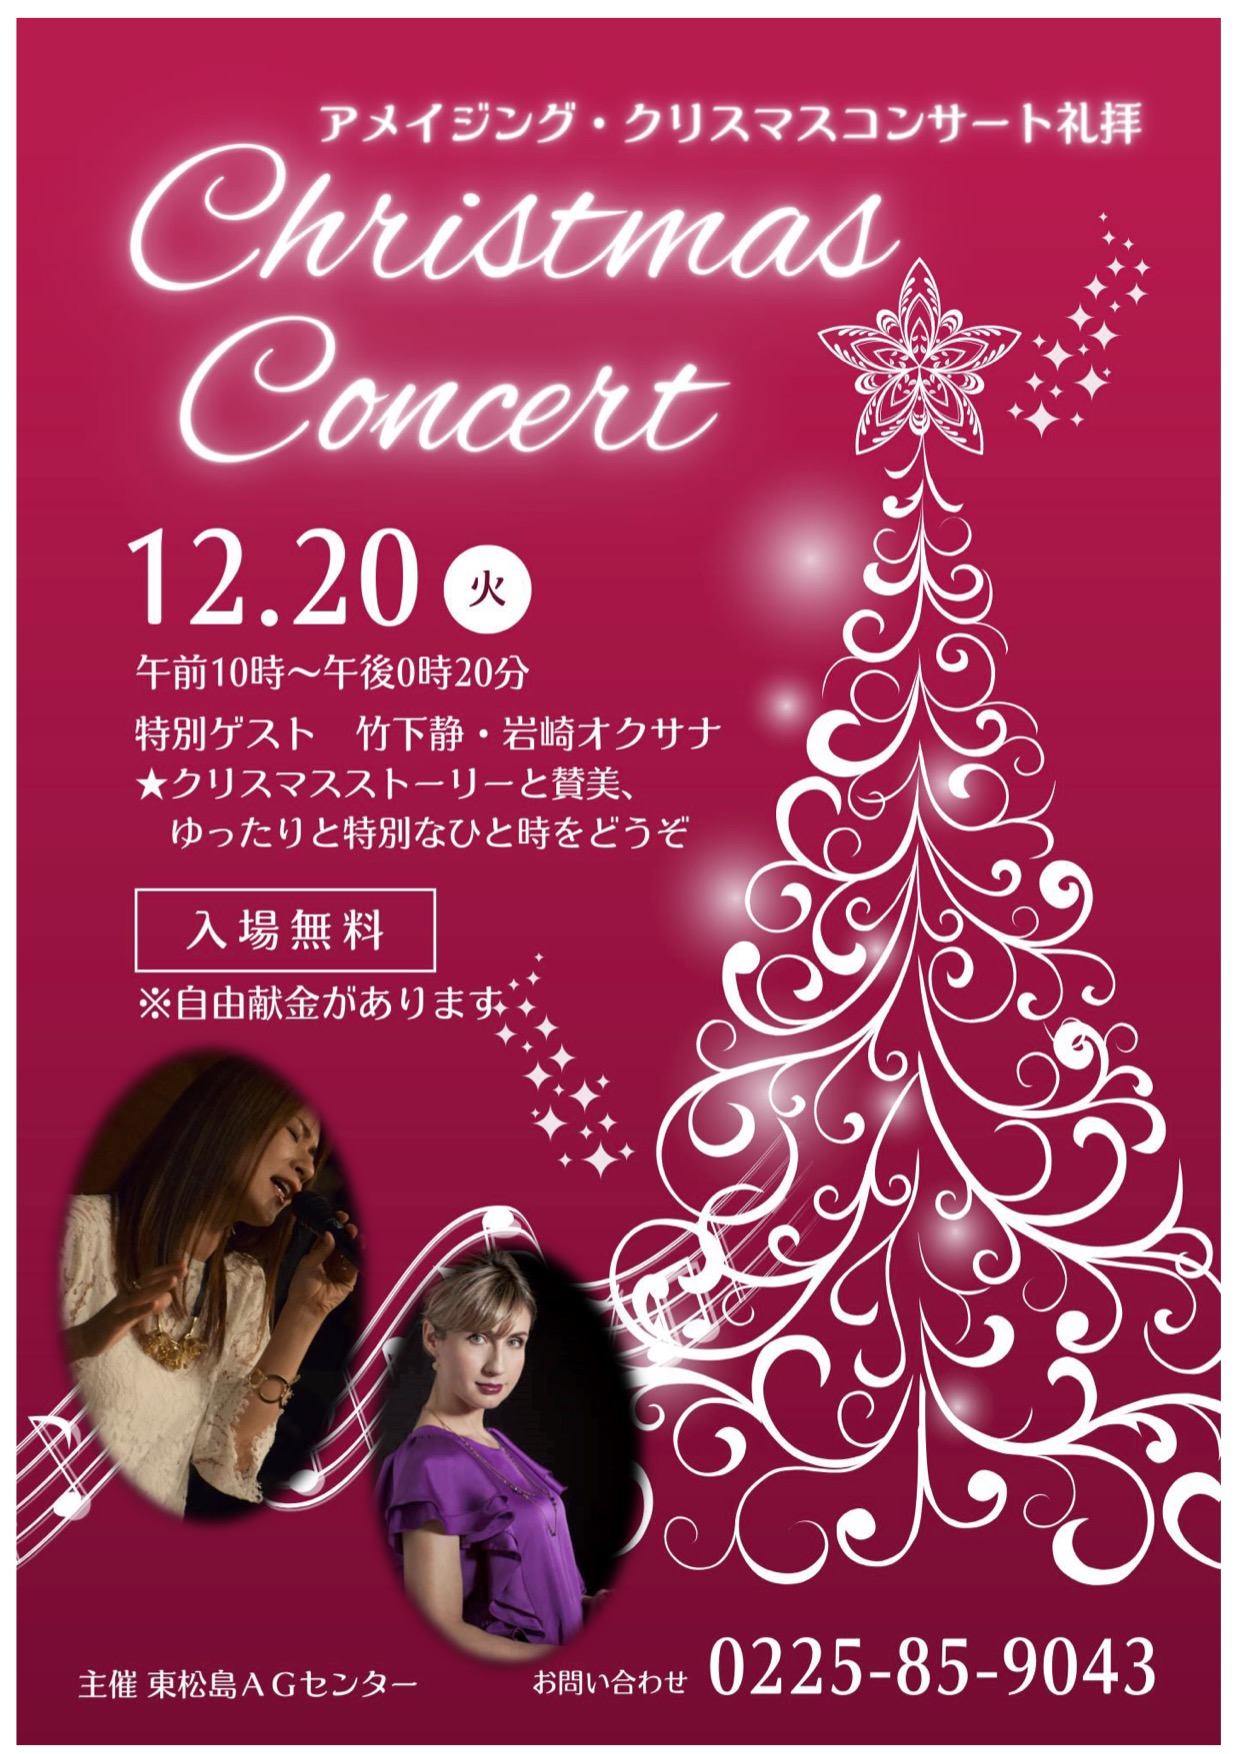 アメイジング・クリスマスコンサート礼拝 @ 東松島アメイジンググレイスセンター | 東松島市 | 宮城県 | 日本